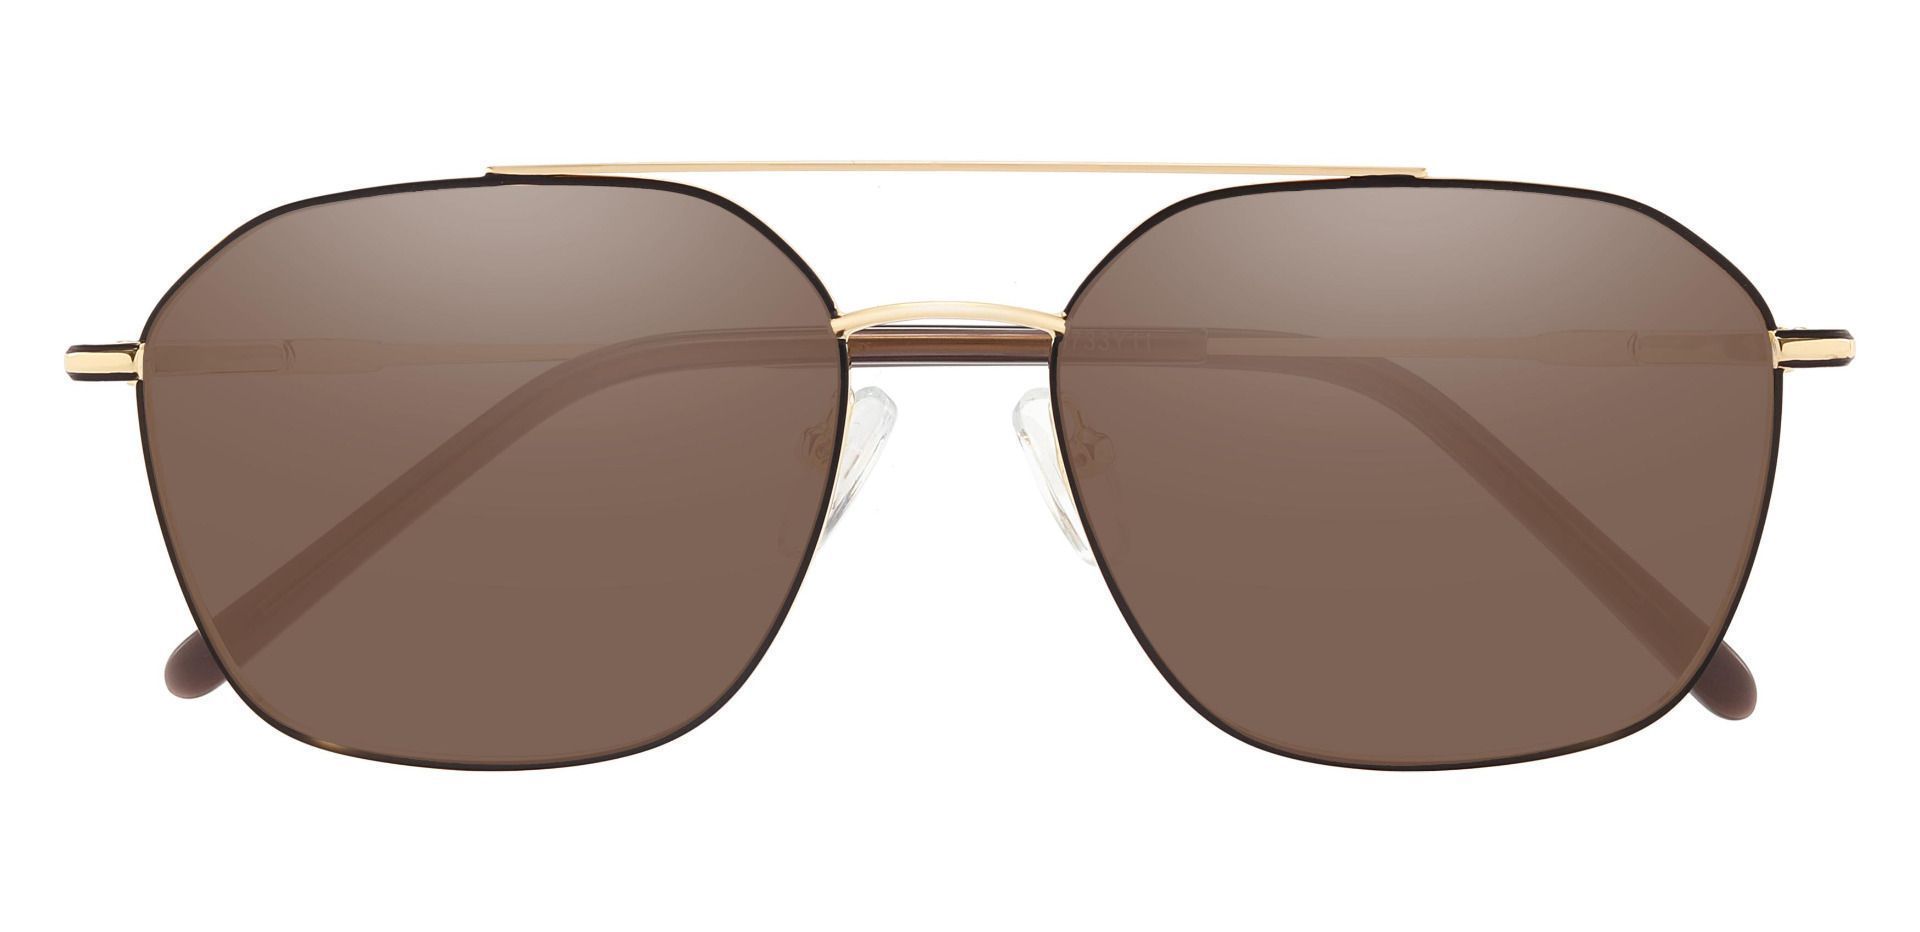 Harvey Aviator Progressive Sunglasses - Gold Frame With Brown Lenses